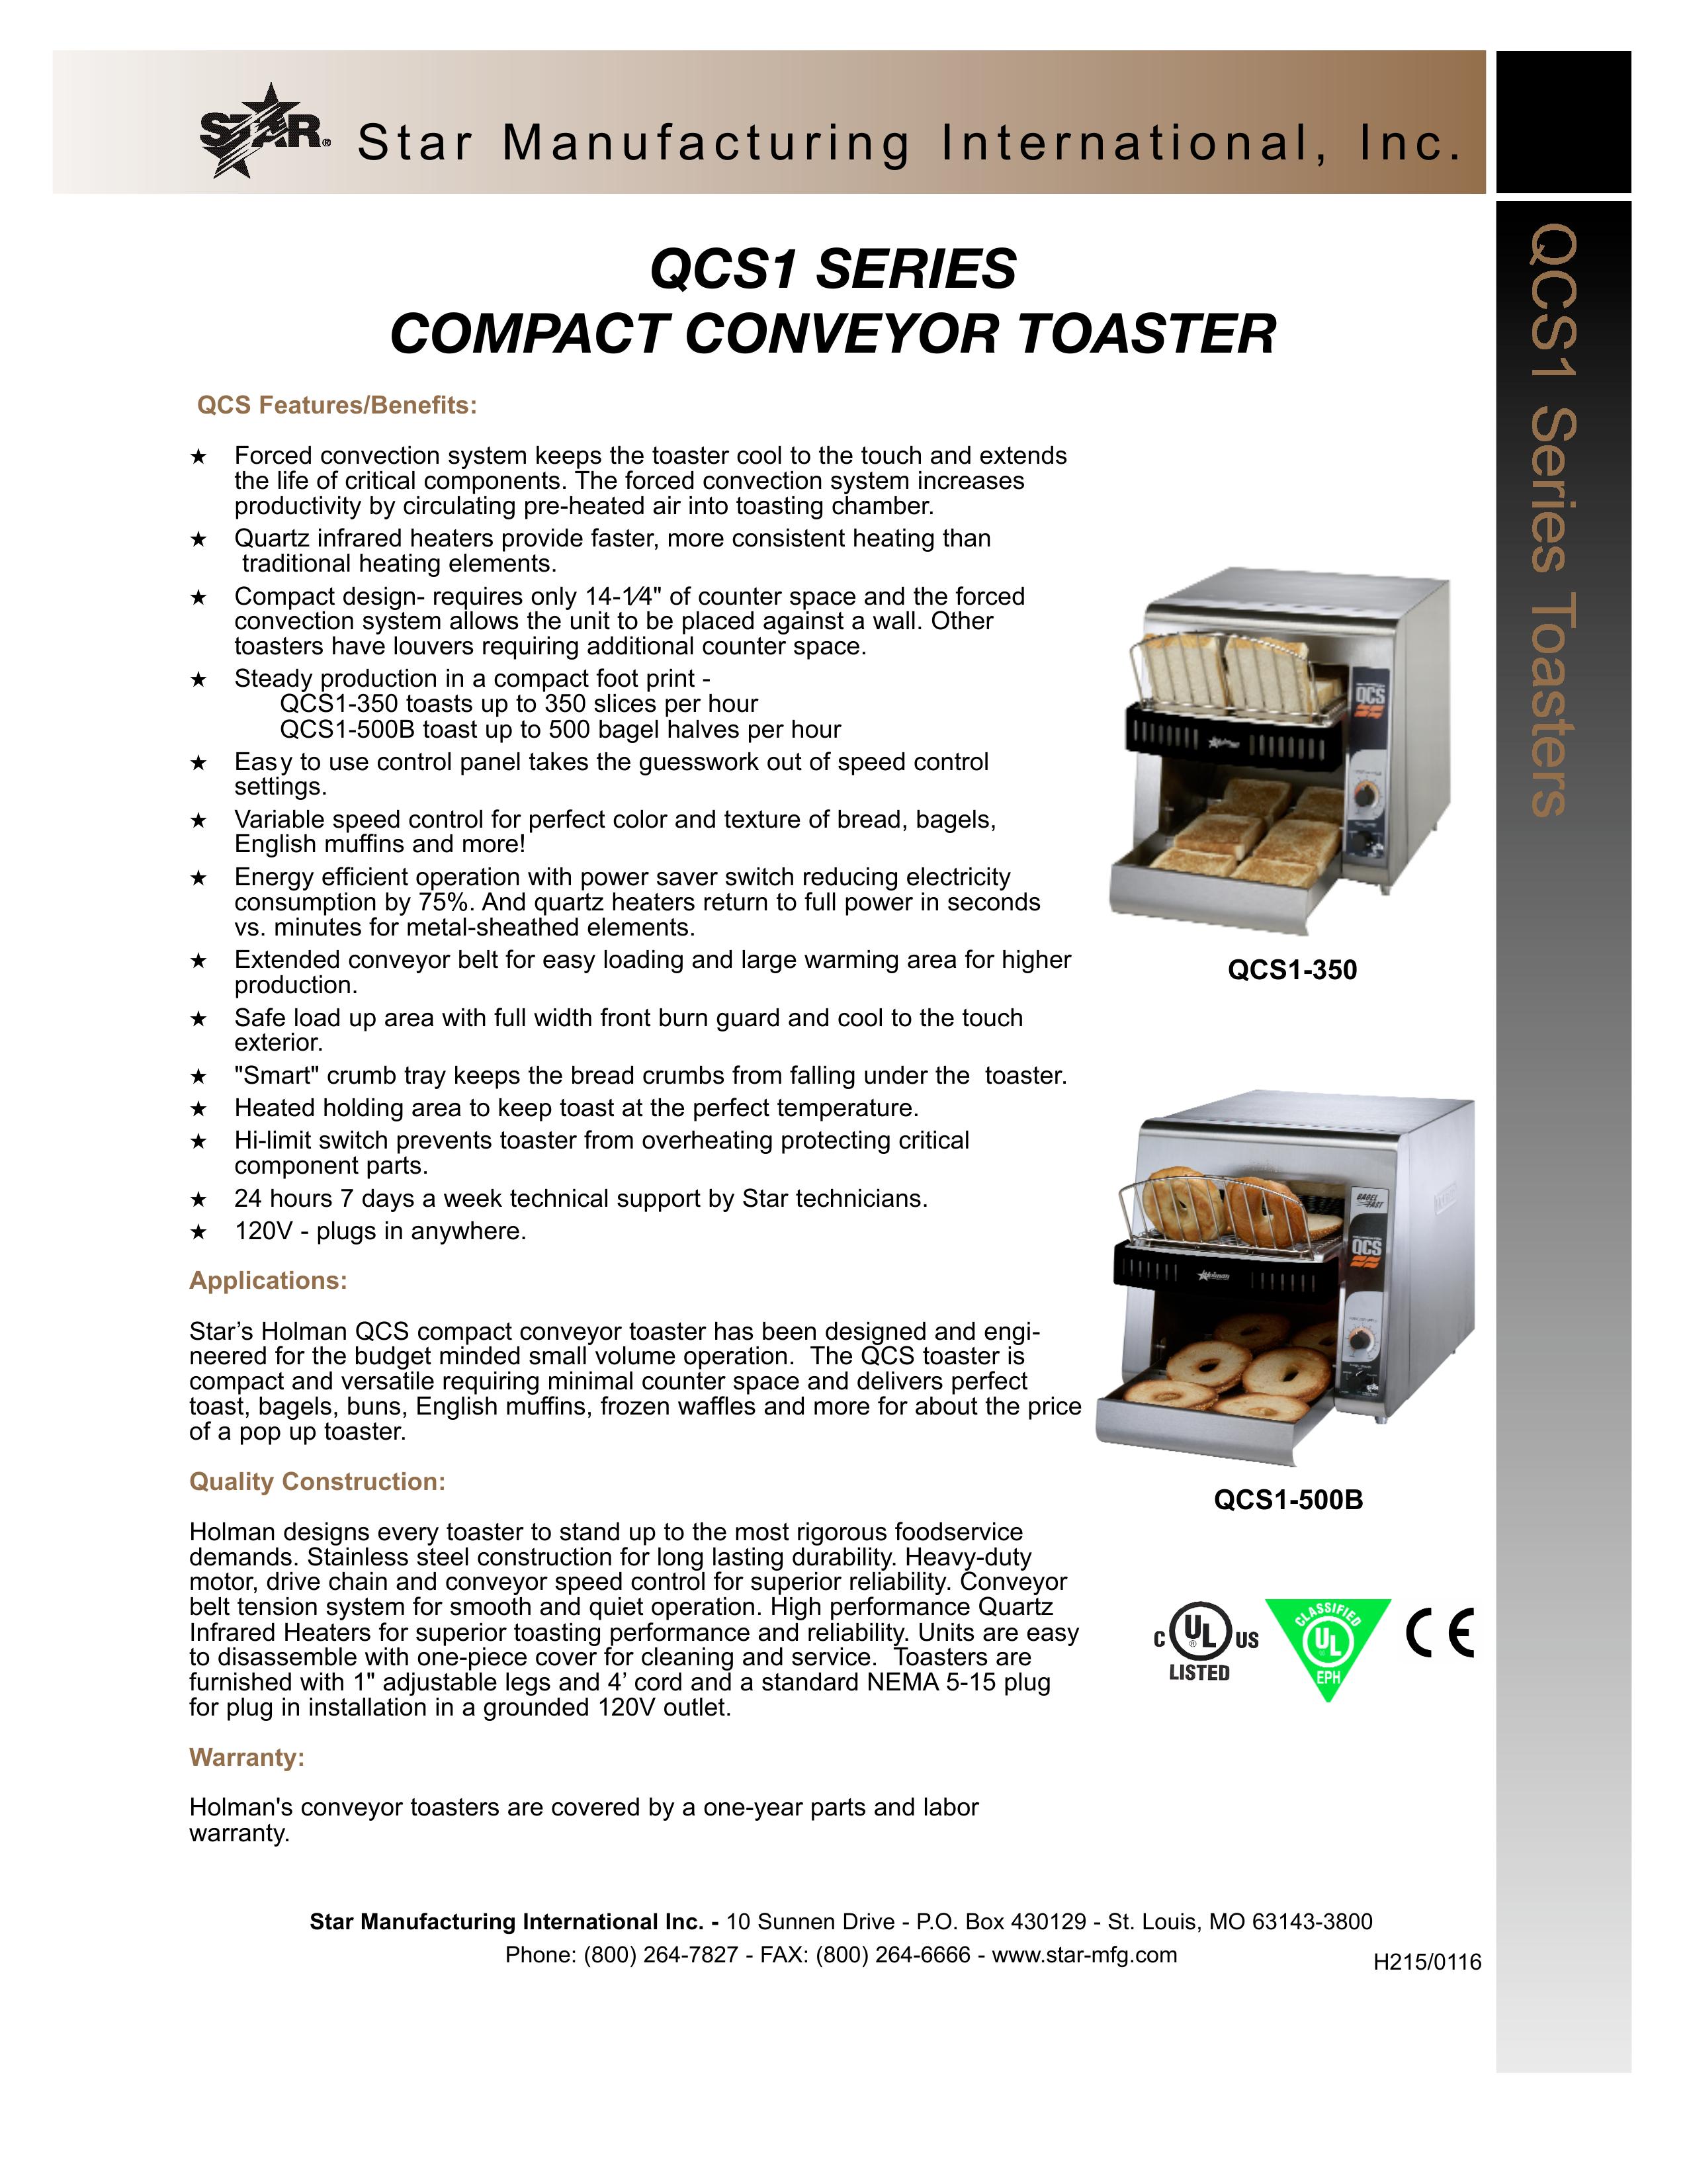 Star Manufacturing QCS1-500B Toaster User Manual